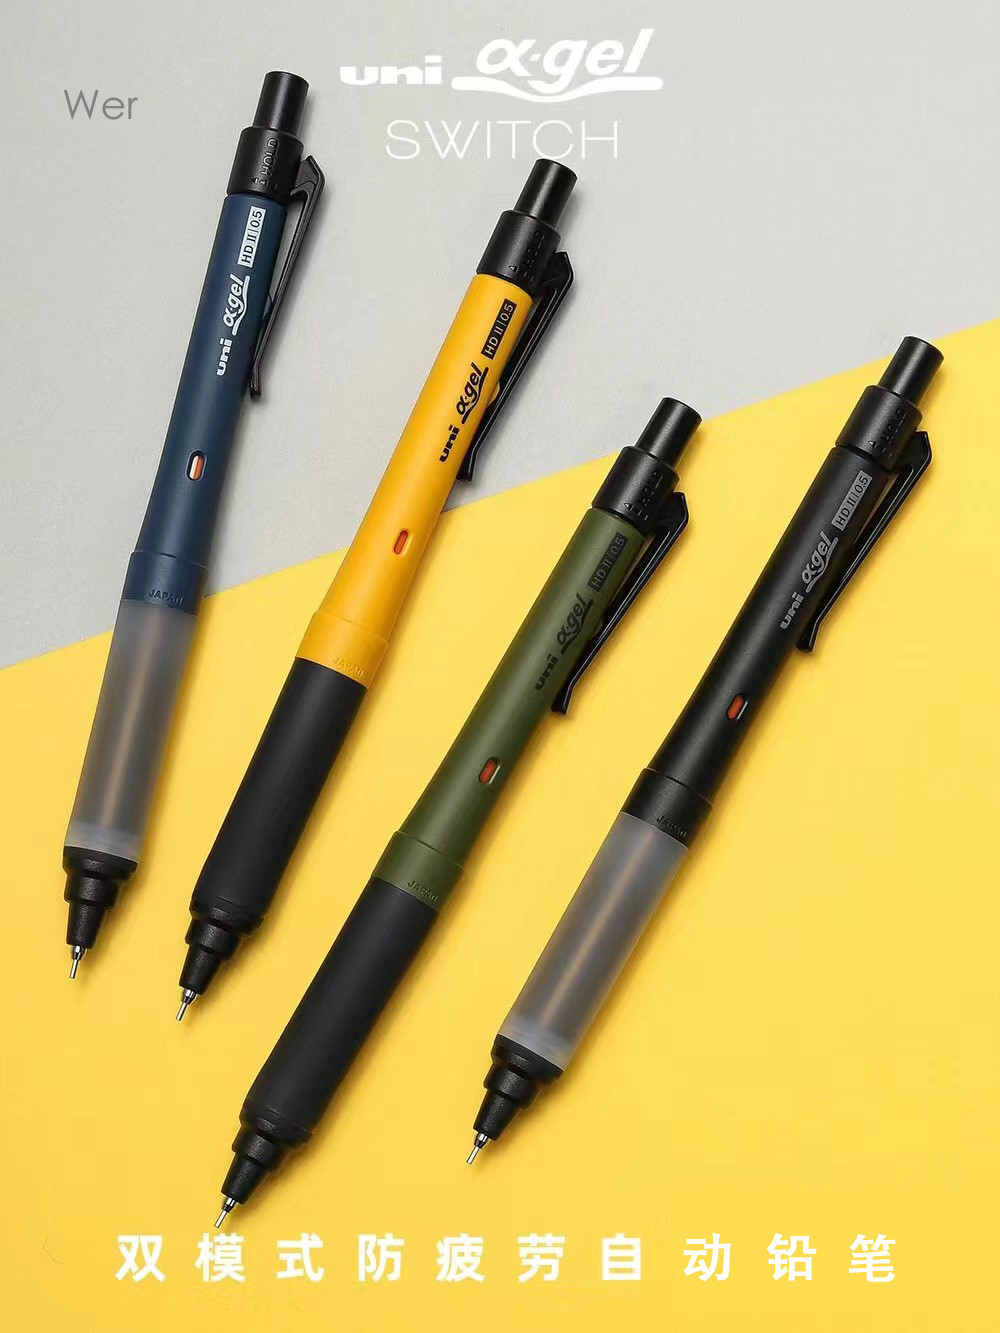 限時下殺 日本uni三菱自動鉛筆M5-1009GG防疲勞學生SWITCH旋轉雙模式自動筆 鉛筆